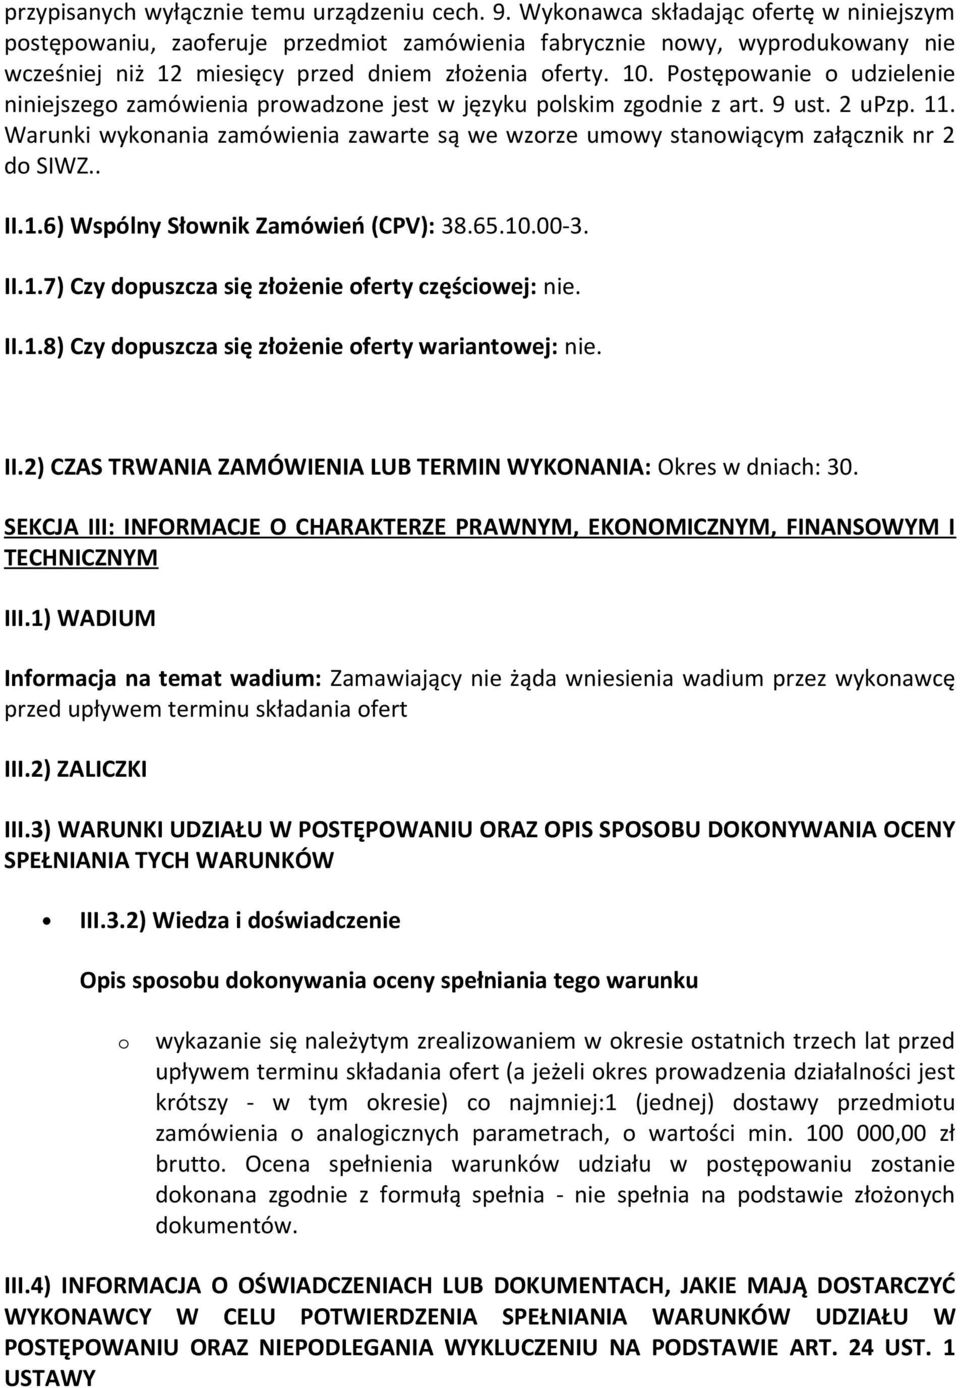 Postępowanie o udzielenie niniejszego zamówienia prowadzone jest w języku polskim zgodnie z art. 9 ust. 2 upzp. 11.